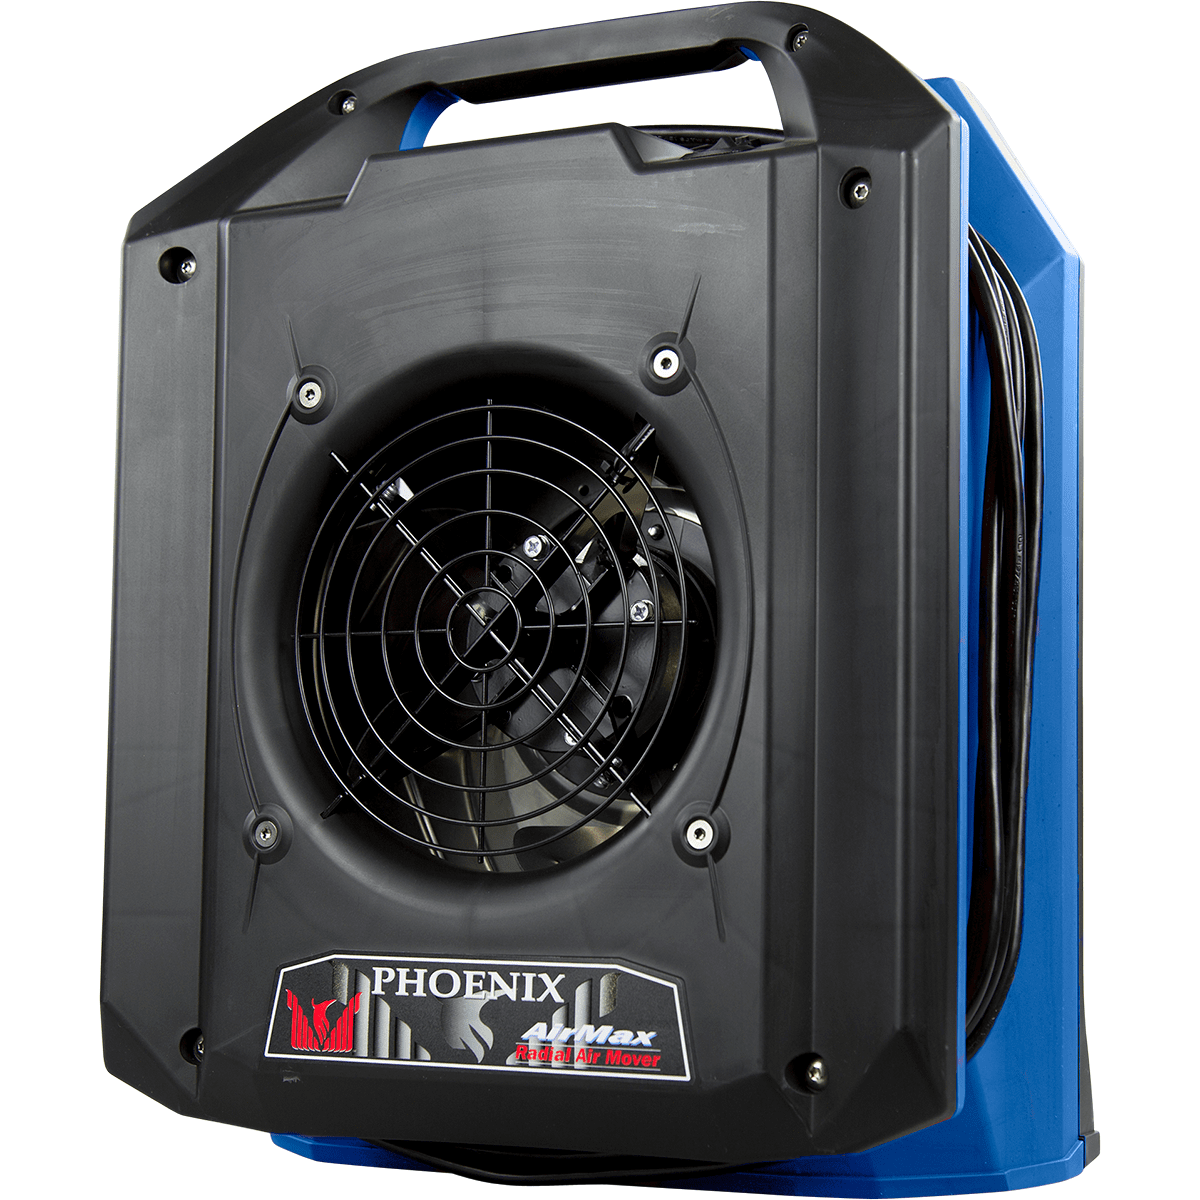 Phoenix Airmax Radial Air Mover - Blue (4035060)